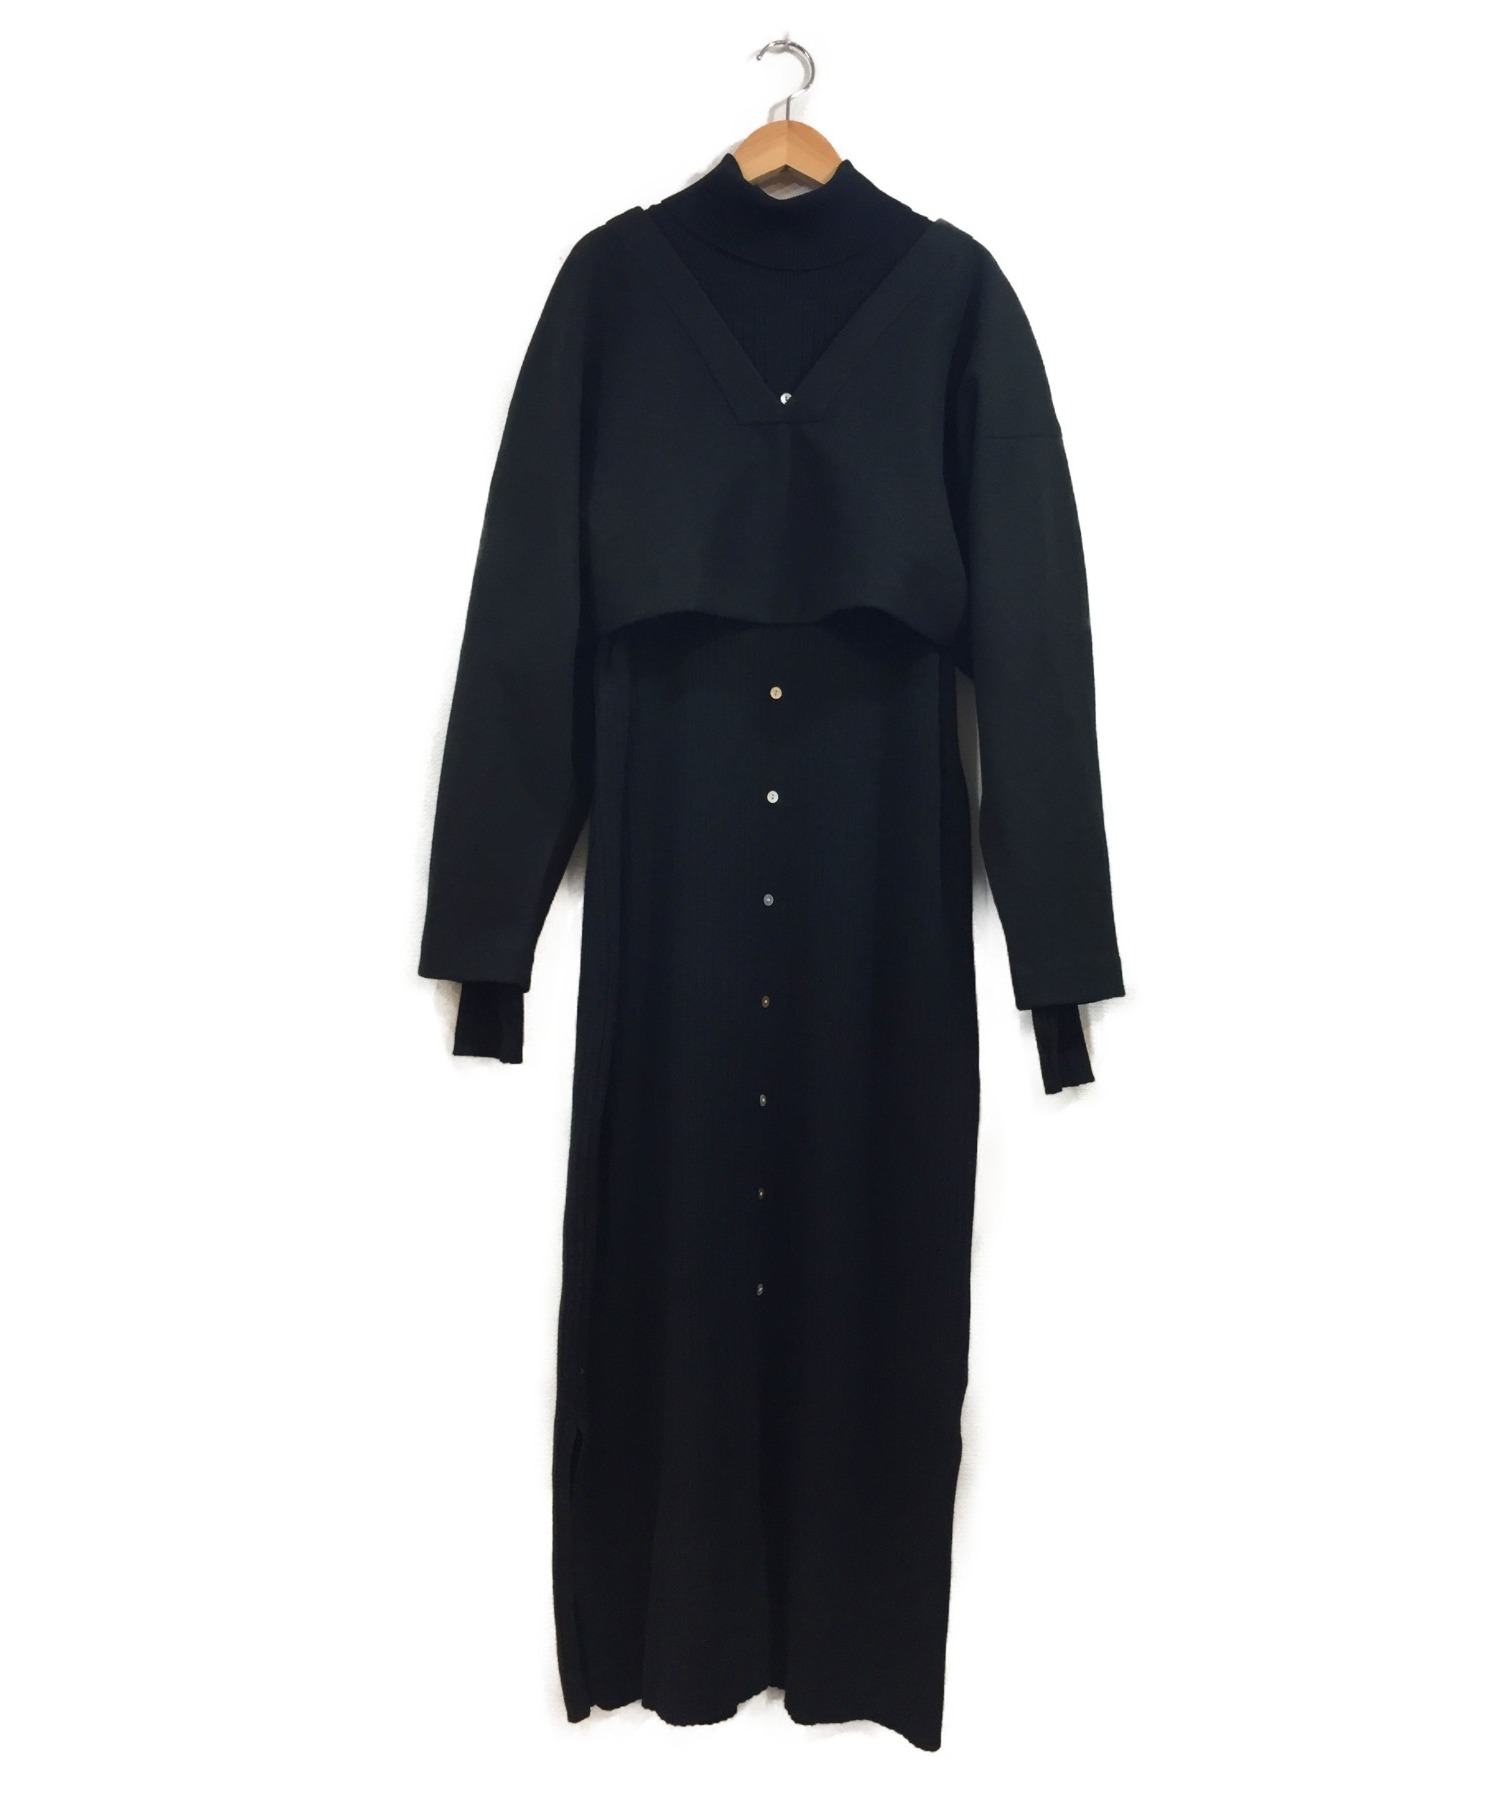 中古 古着通販 Ameri アメリヴィンテージ セットアップレイヤードニットワンピース ブラック サイズ F Layered Knit Dress 完売アイテム ブランド 古着通販 トレファク公式 Trefac Fashion